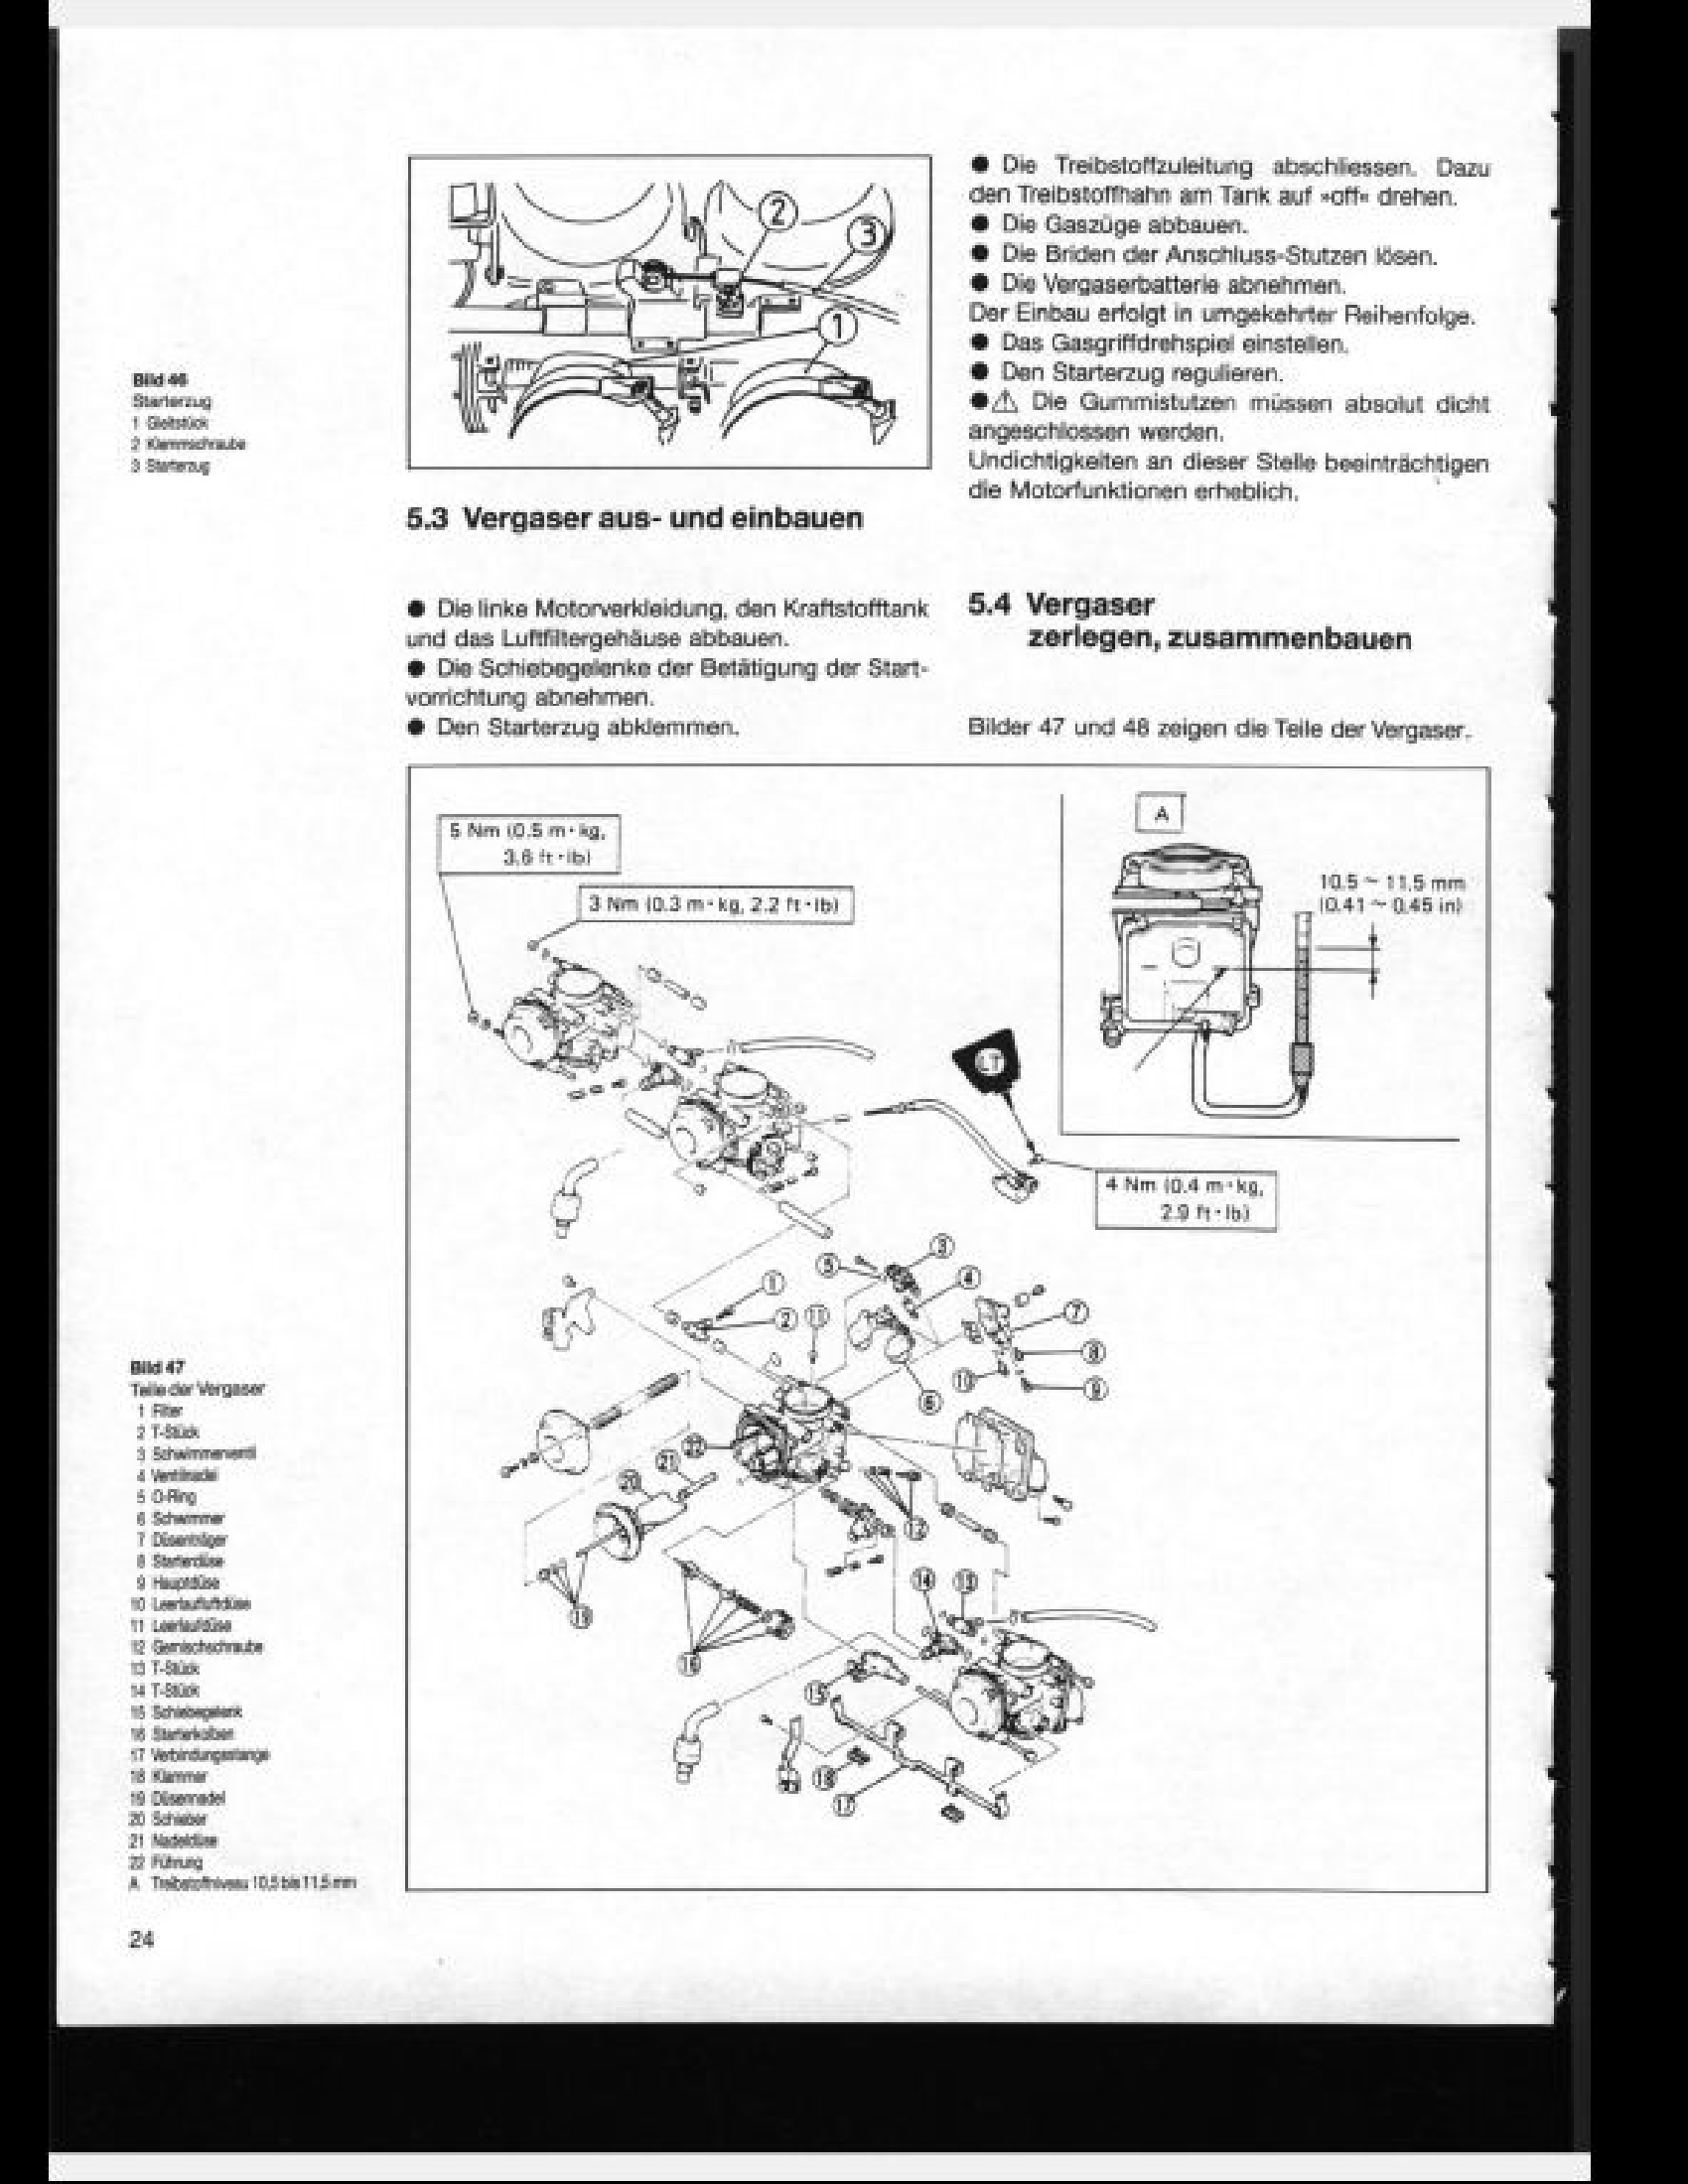 Yamaha FZR1000 Motocycle manual